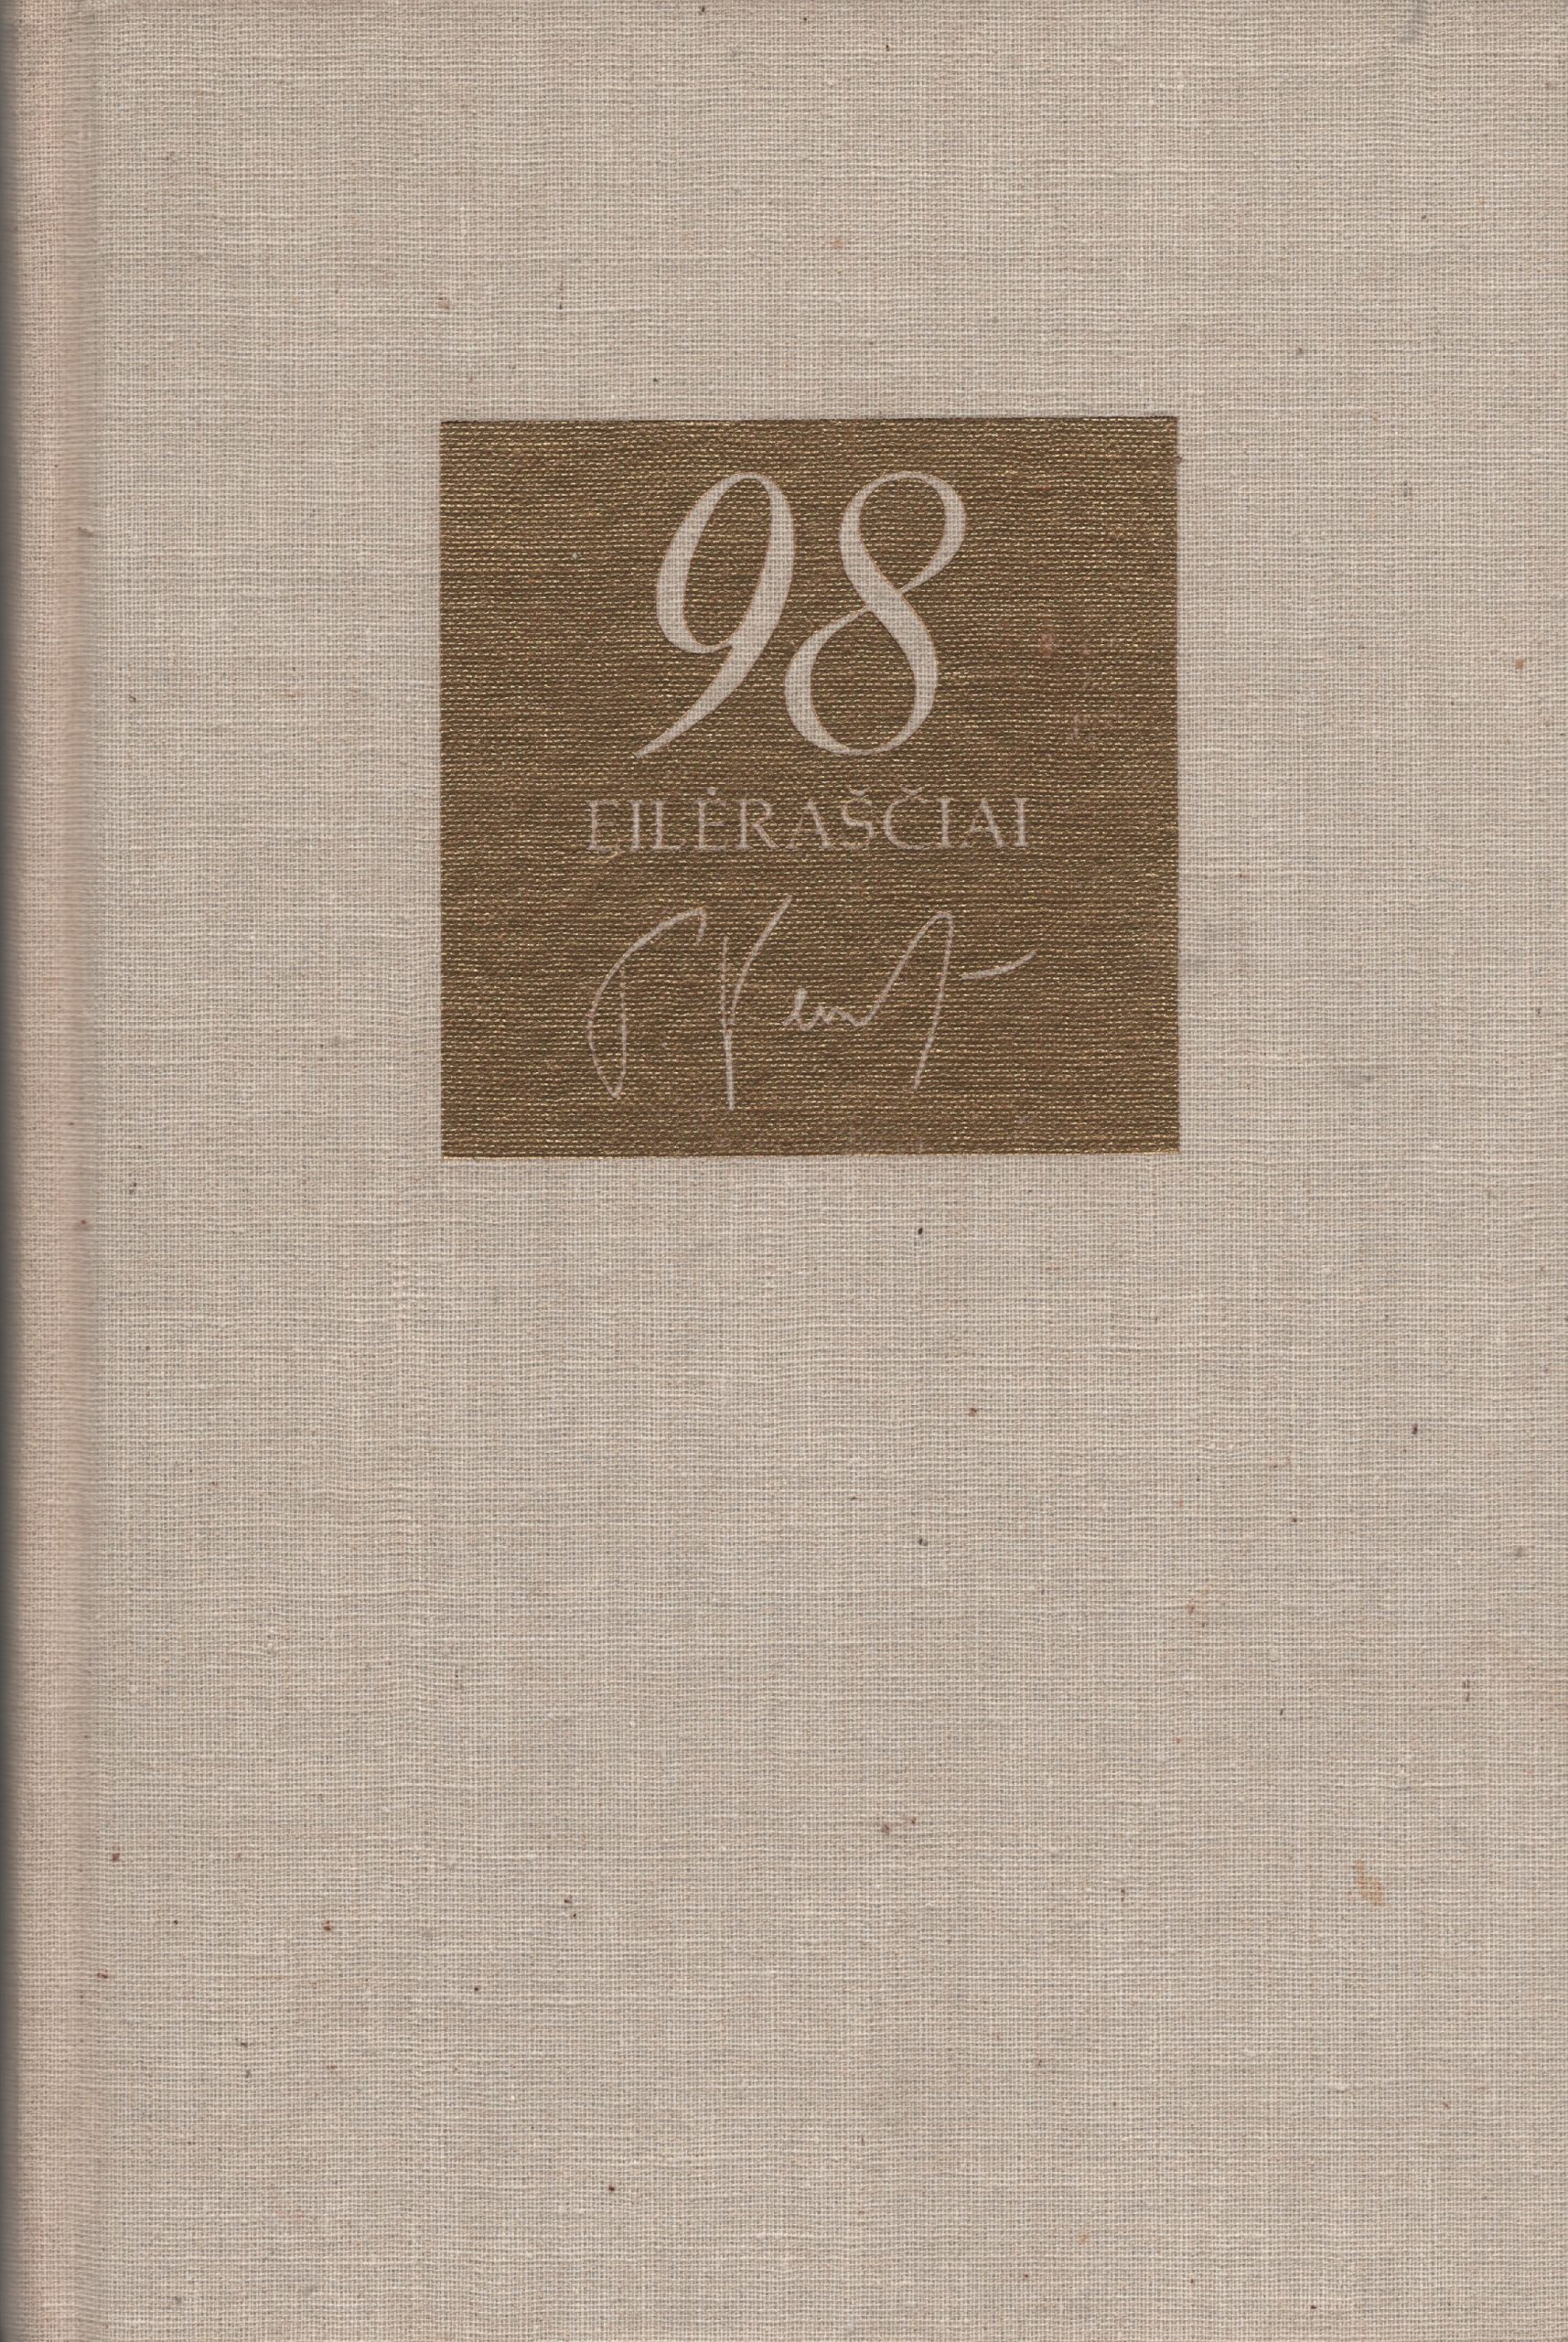 T. Venclovos eilėraščių rinktinė „98 eilėraščiai“, aprėpė visus lyg tol spausdintus ir nespausdintus eilėraščius. Čikaga, 1977 m. MLLM 127600 1